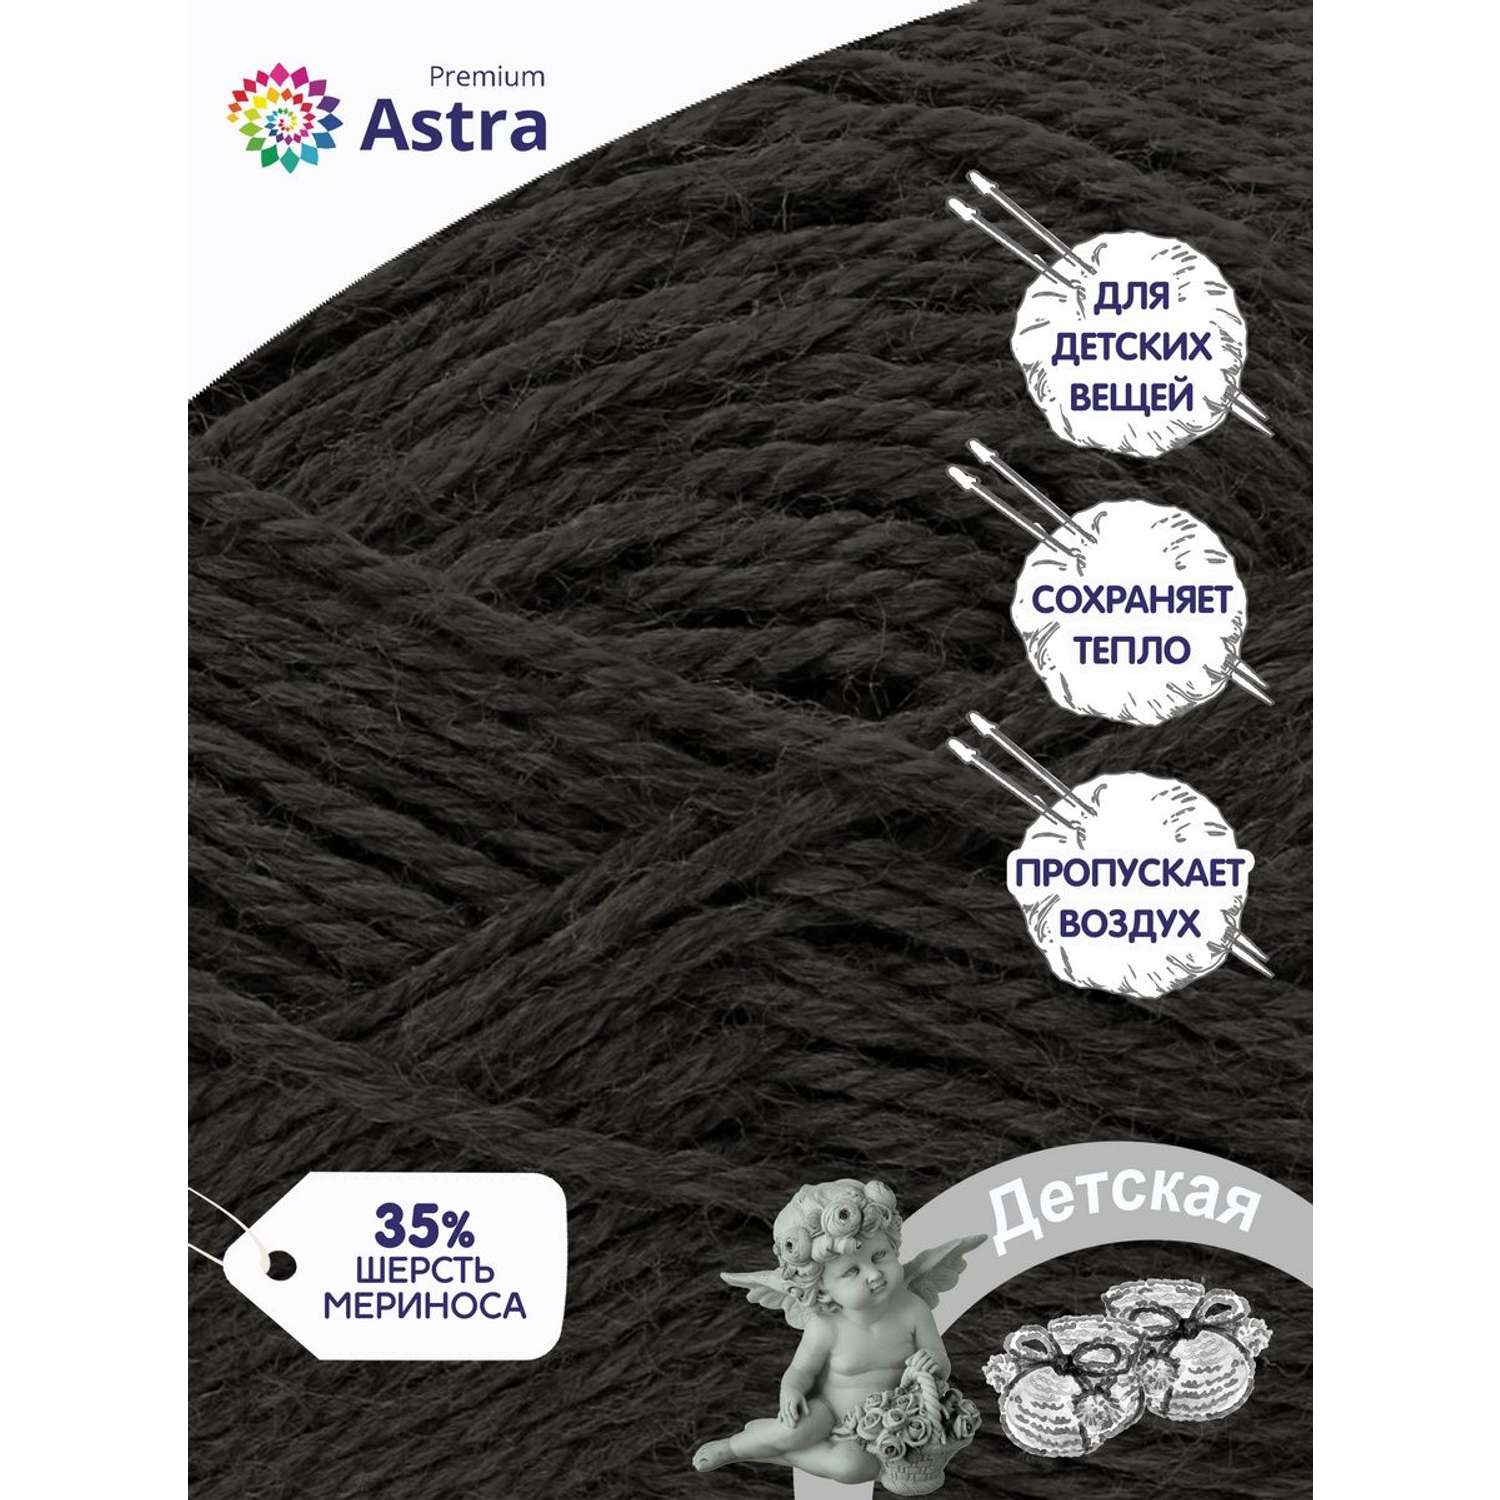 Пряжа для вязания Astra Premium детская из акрила и шерсти для детских вещей 90 гр 270 м черный 3 мотка - фото 2